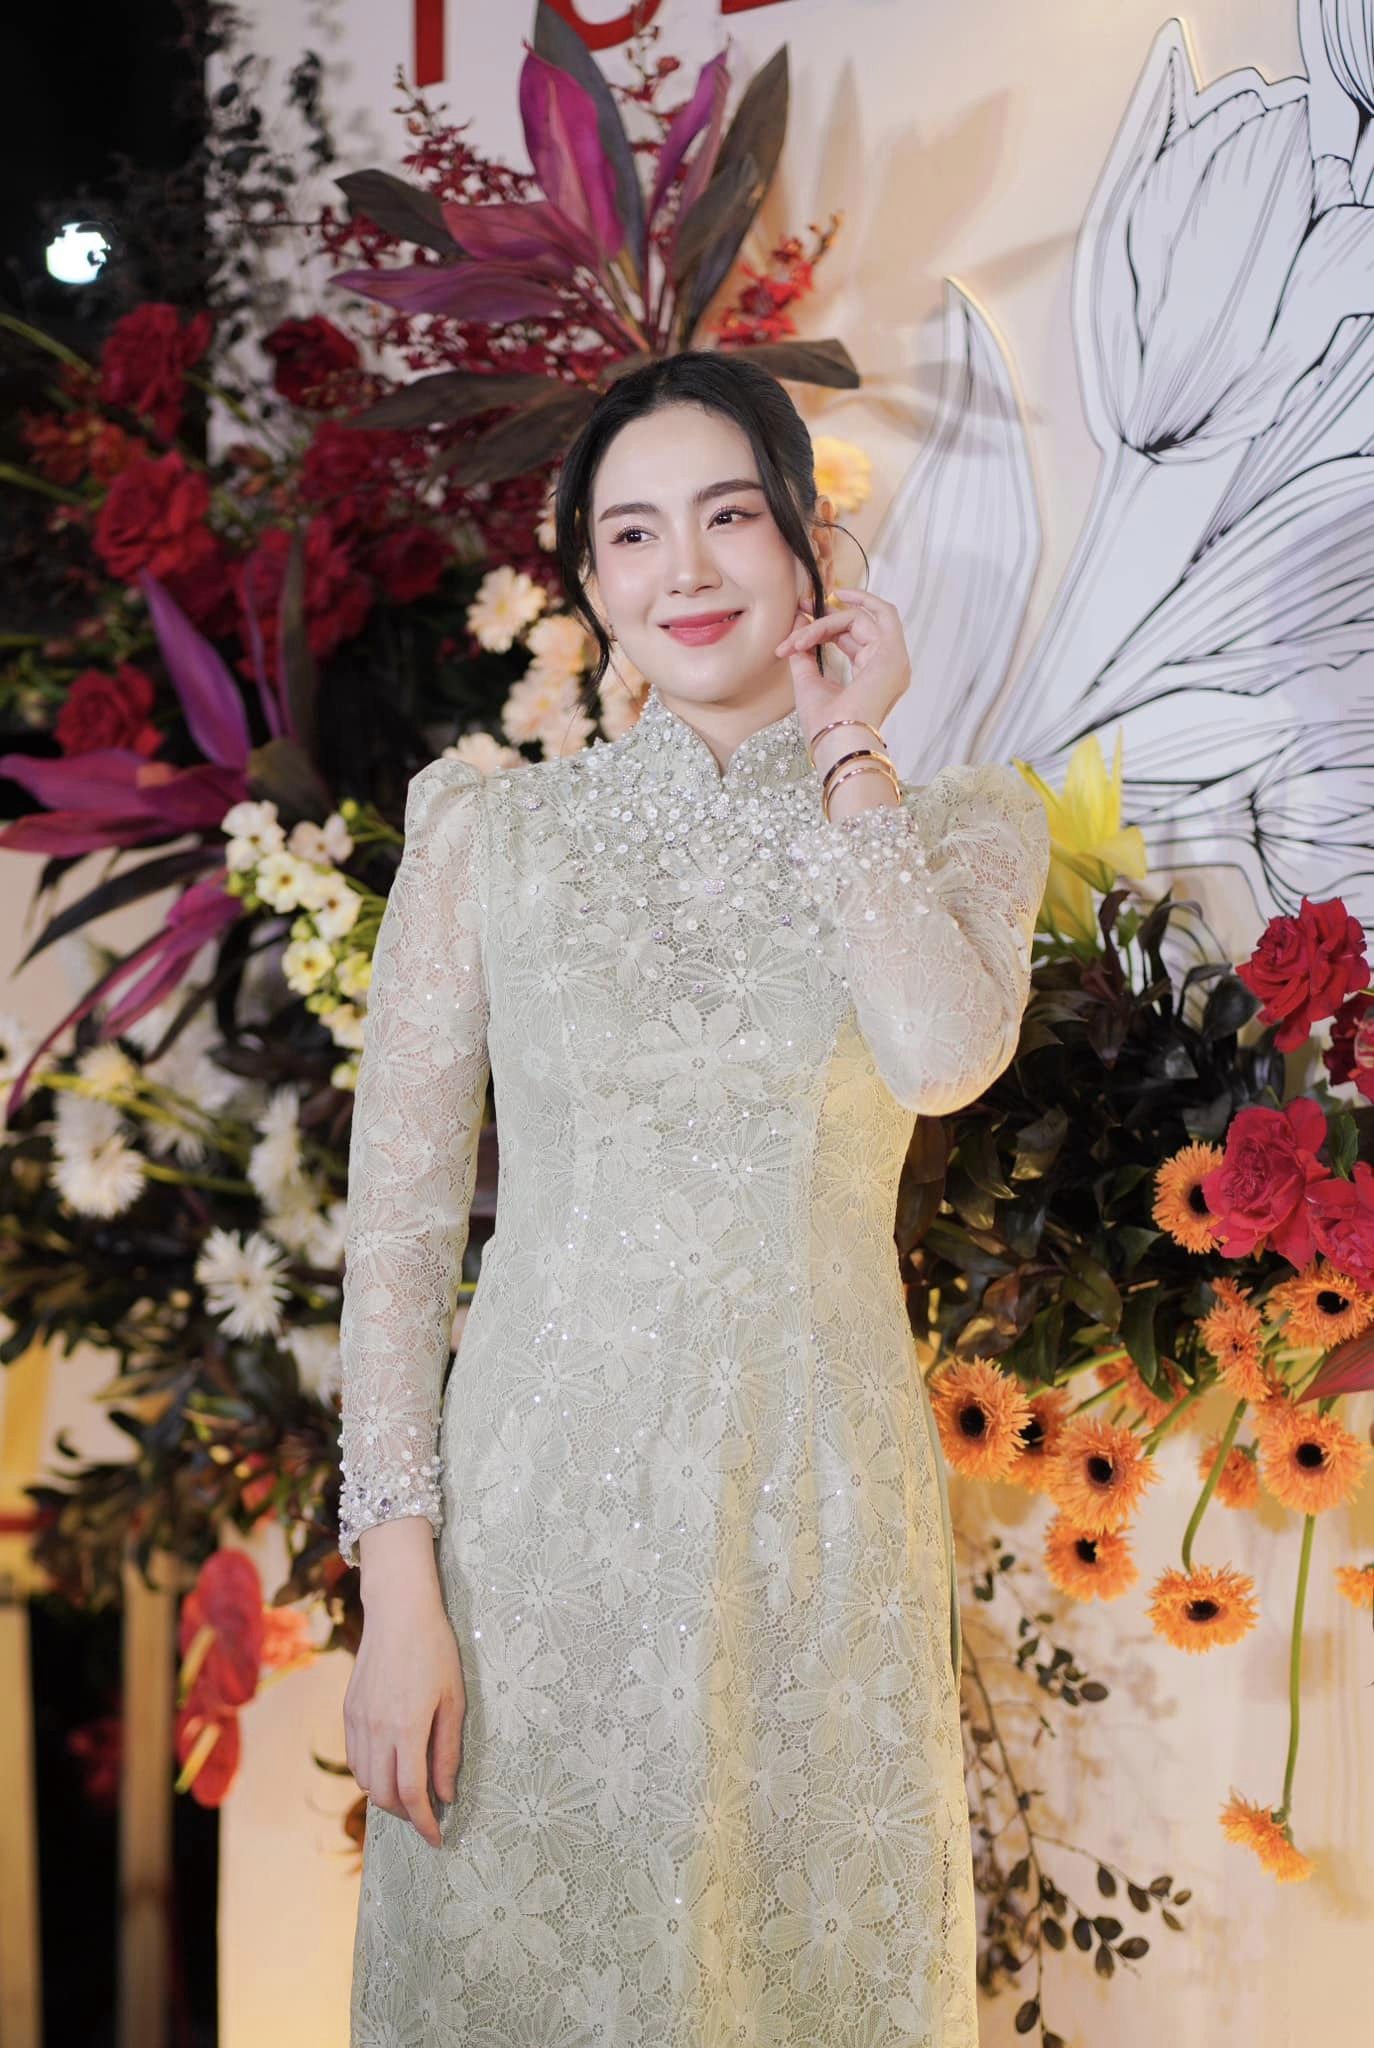 Sau ly hôn MC Mai Ngọc gặp tình trạng sức khỏe báo động: Giảm 4kg, mệt không cầm nổi điện thoại - ảnh 3